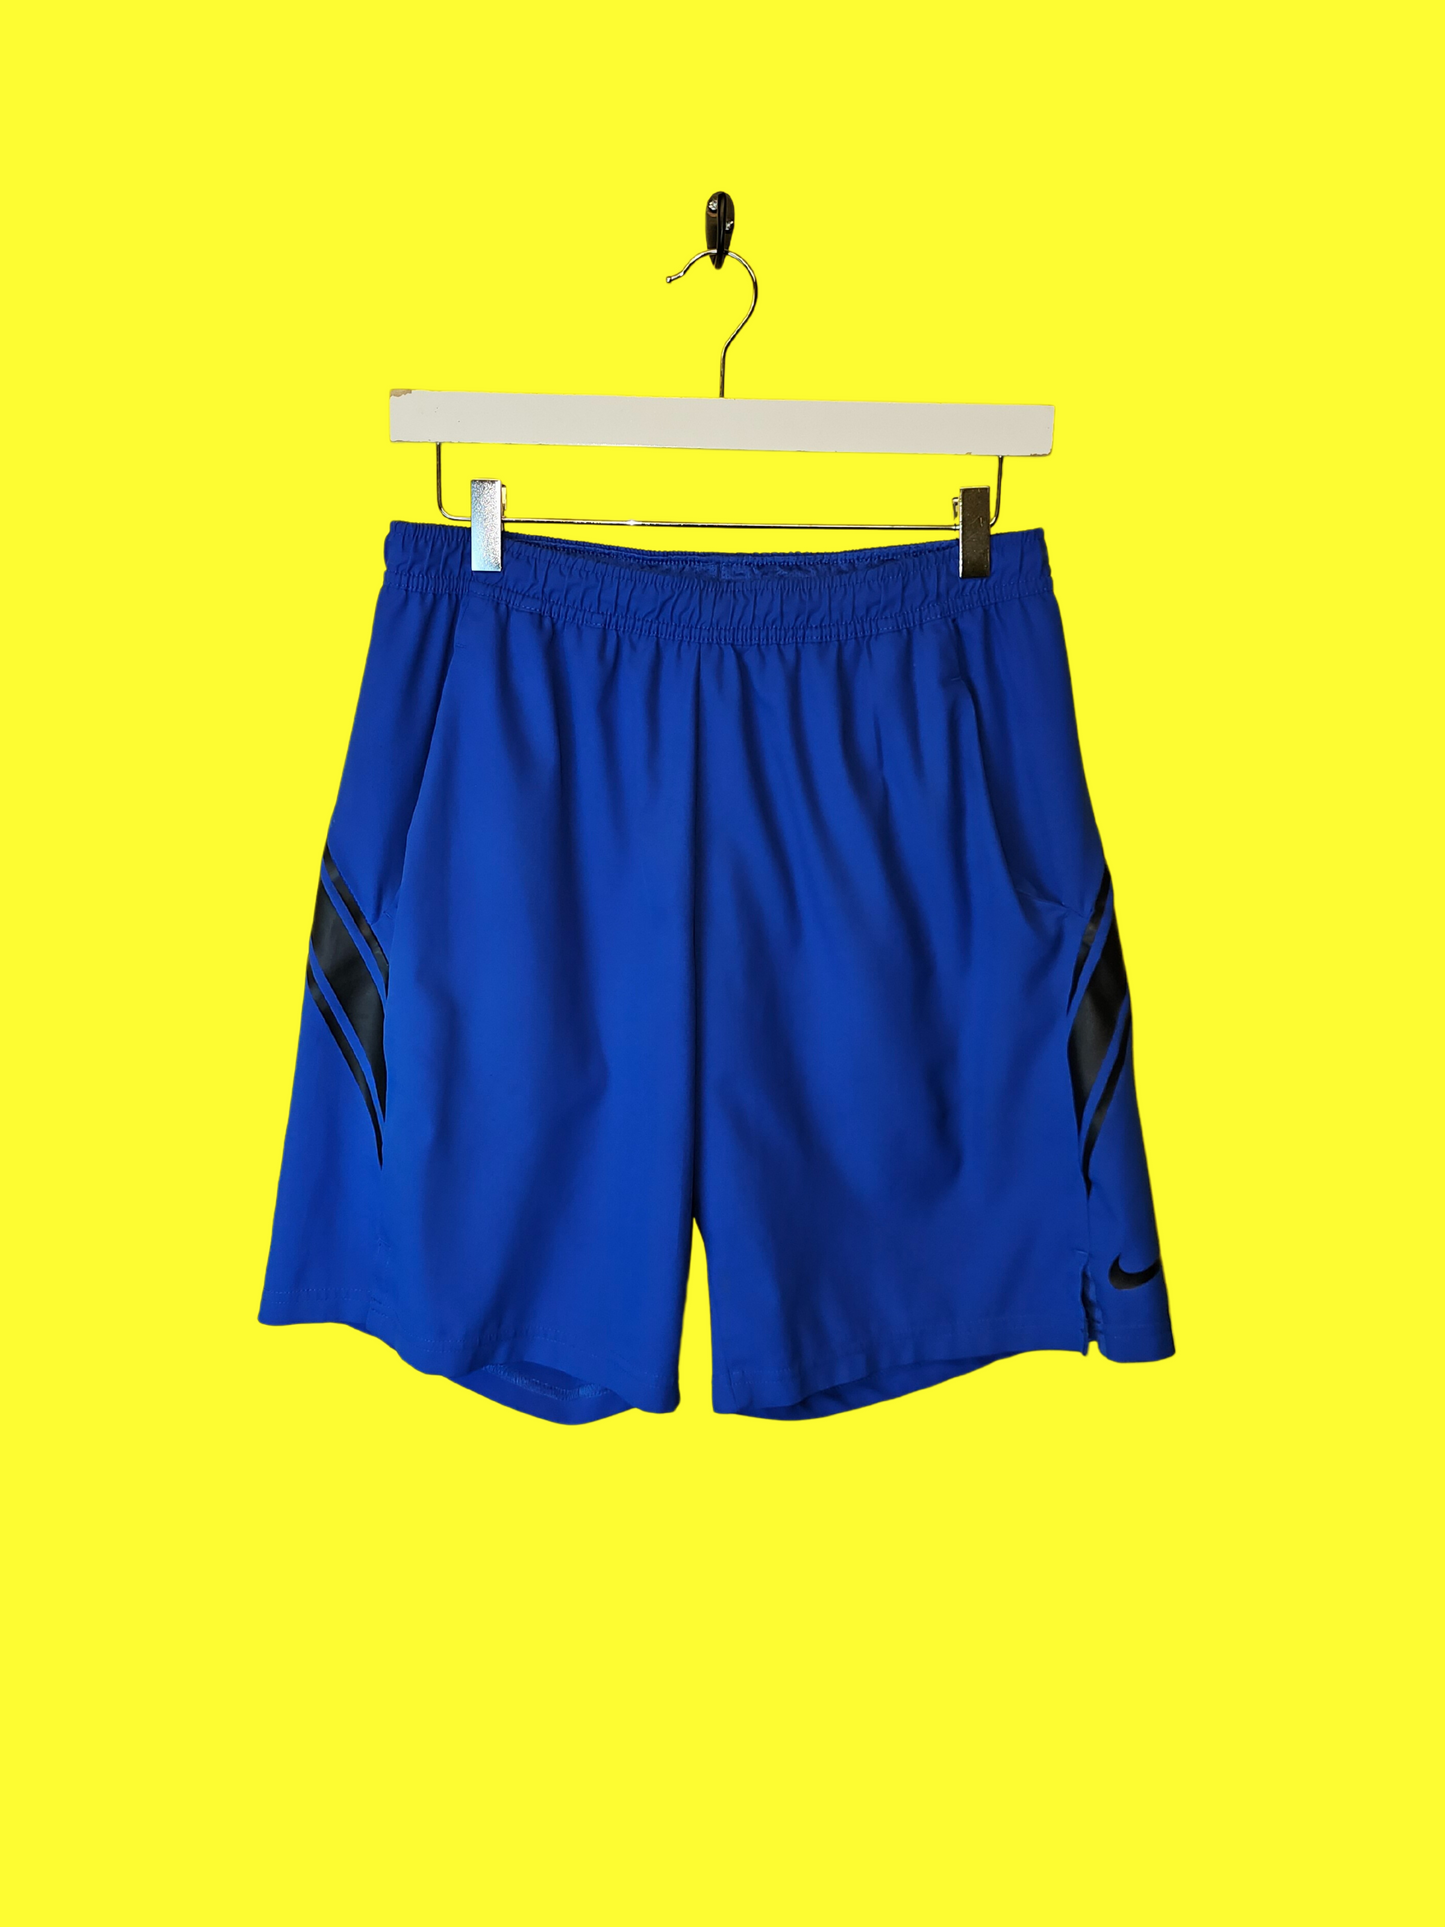 Nike Dri-Fit Shorts Size (L)